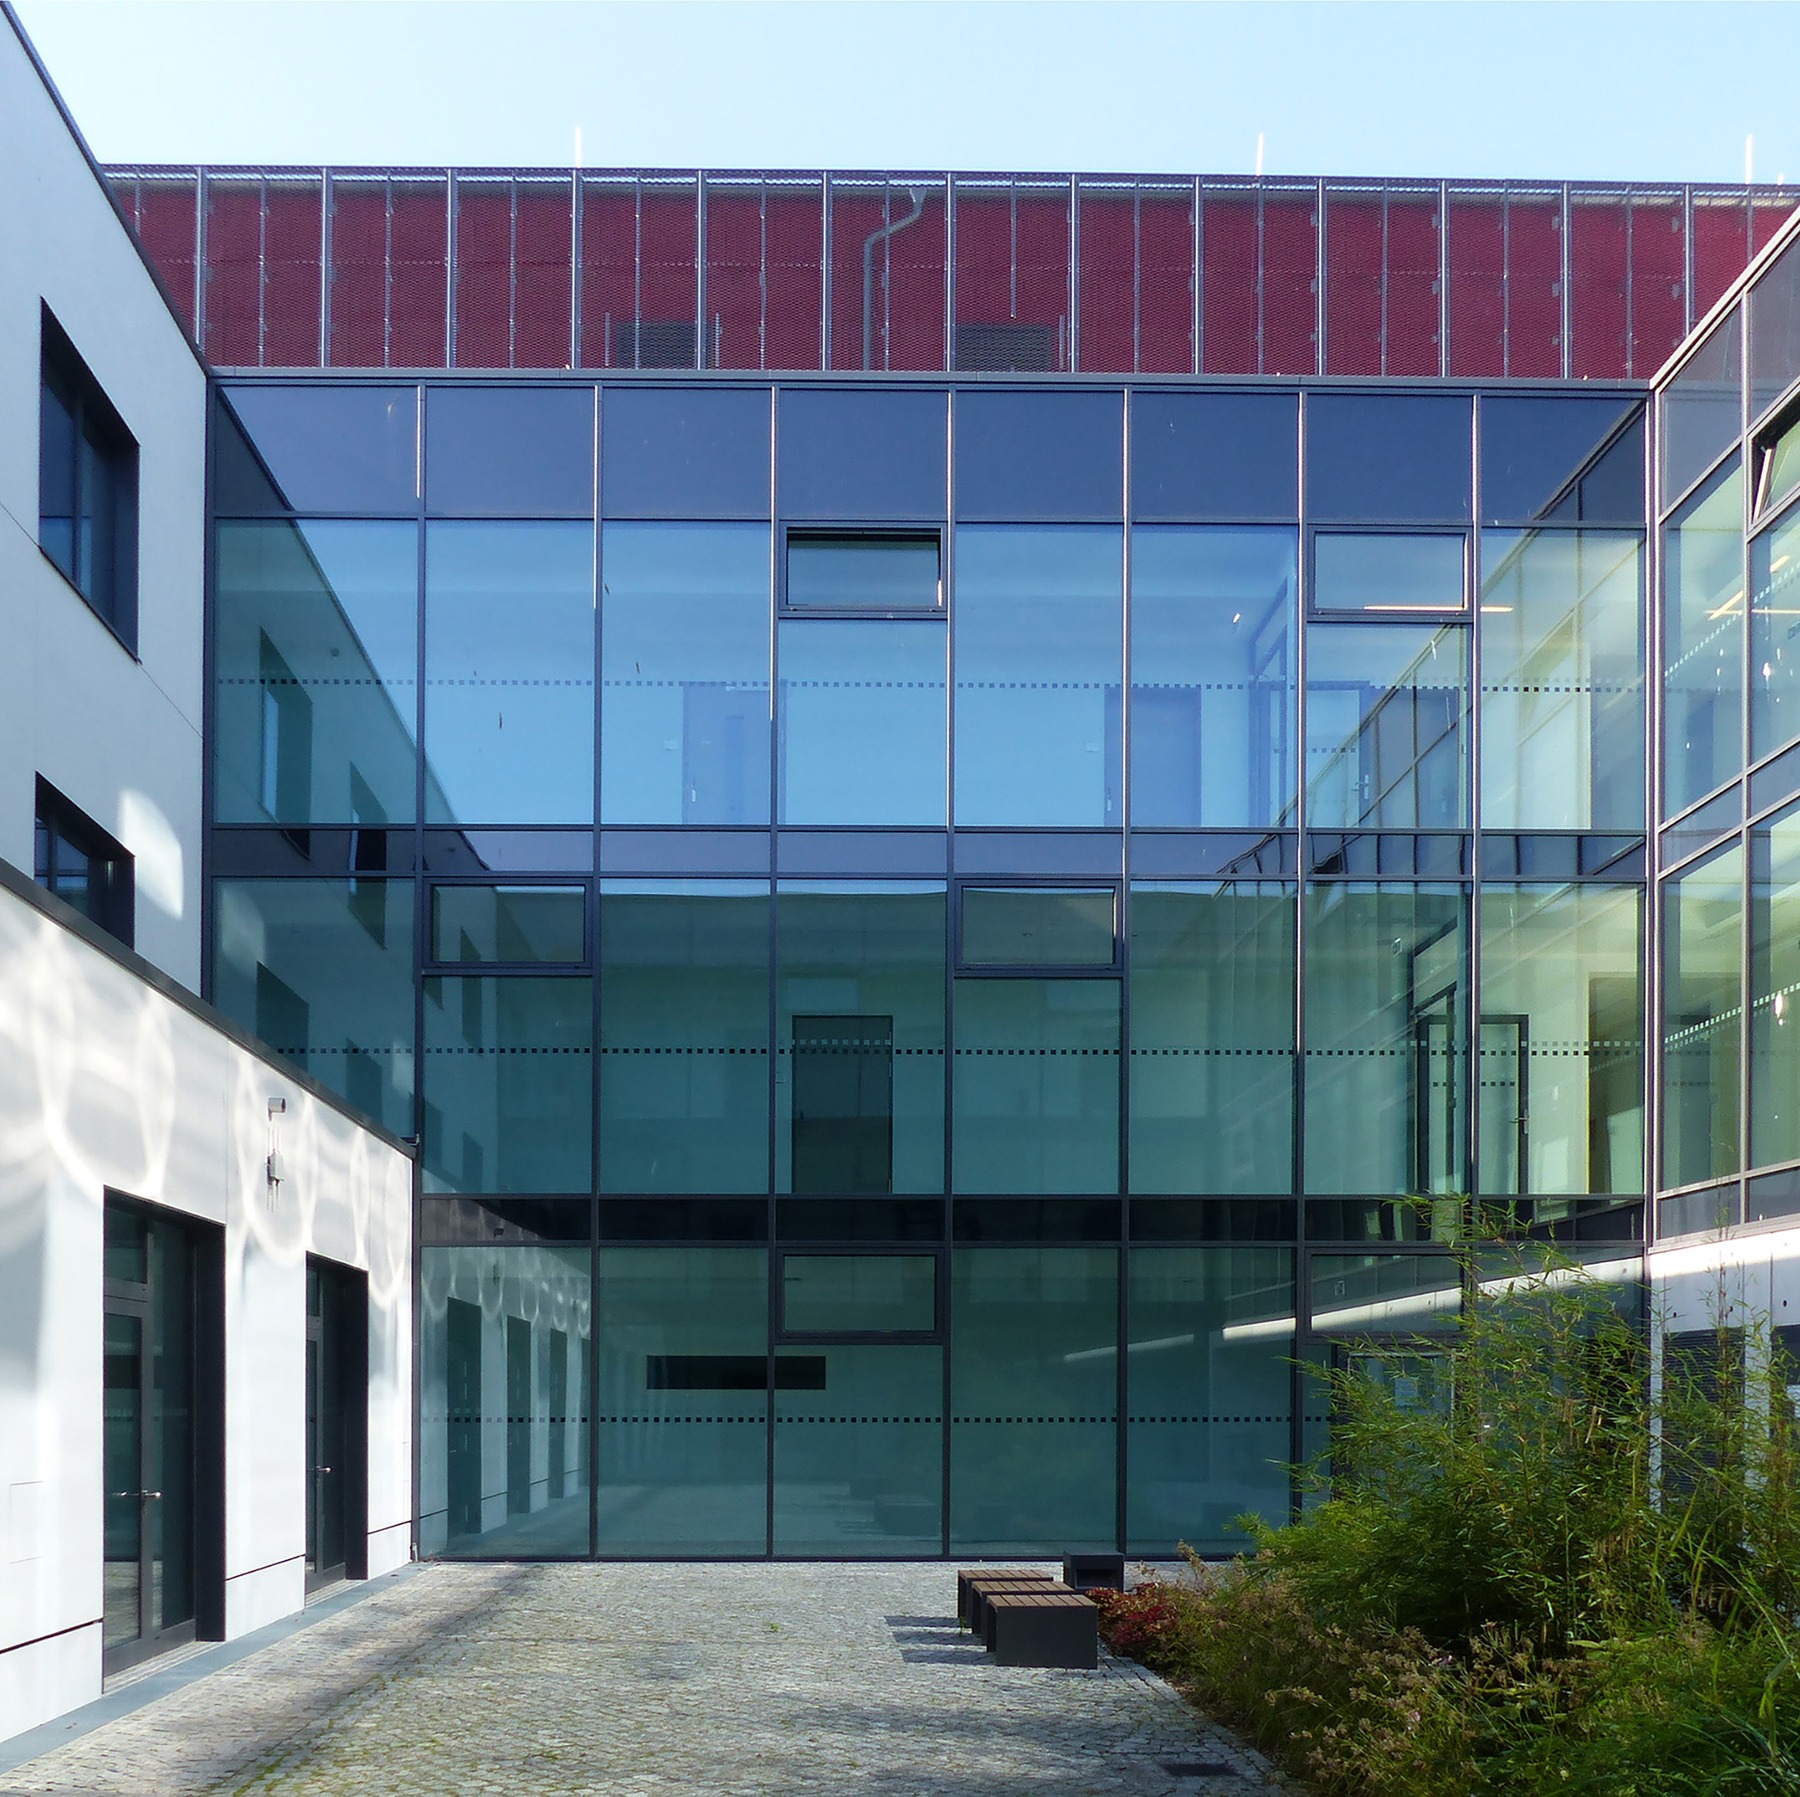 Innenhof mit Begrünung und Aufenthaltszone © 2020 Staatliches Bau- und Liegenschaftsamt Greifswald